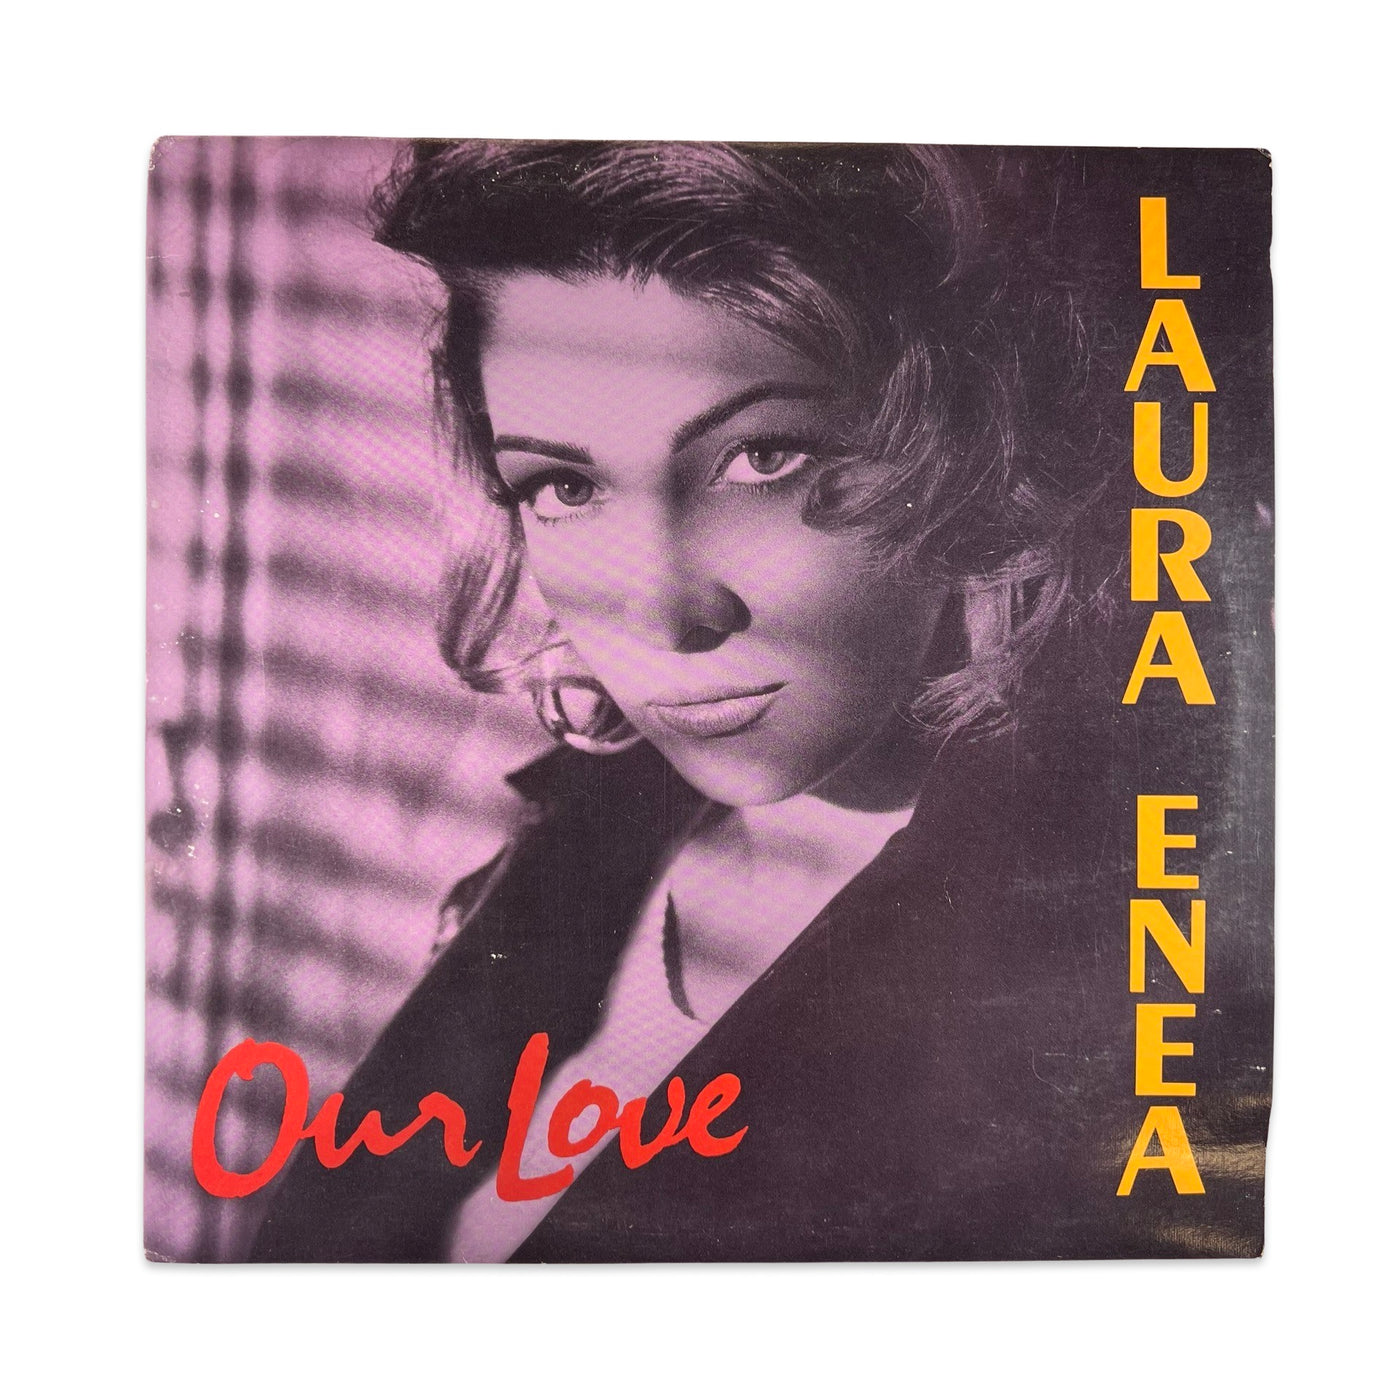 Laura Enea – Our Love